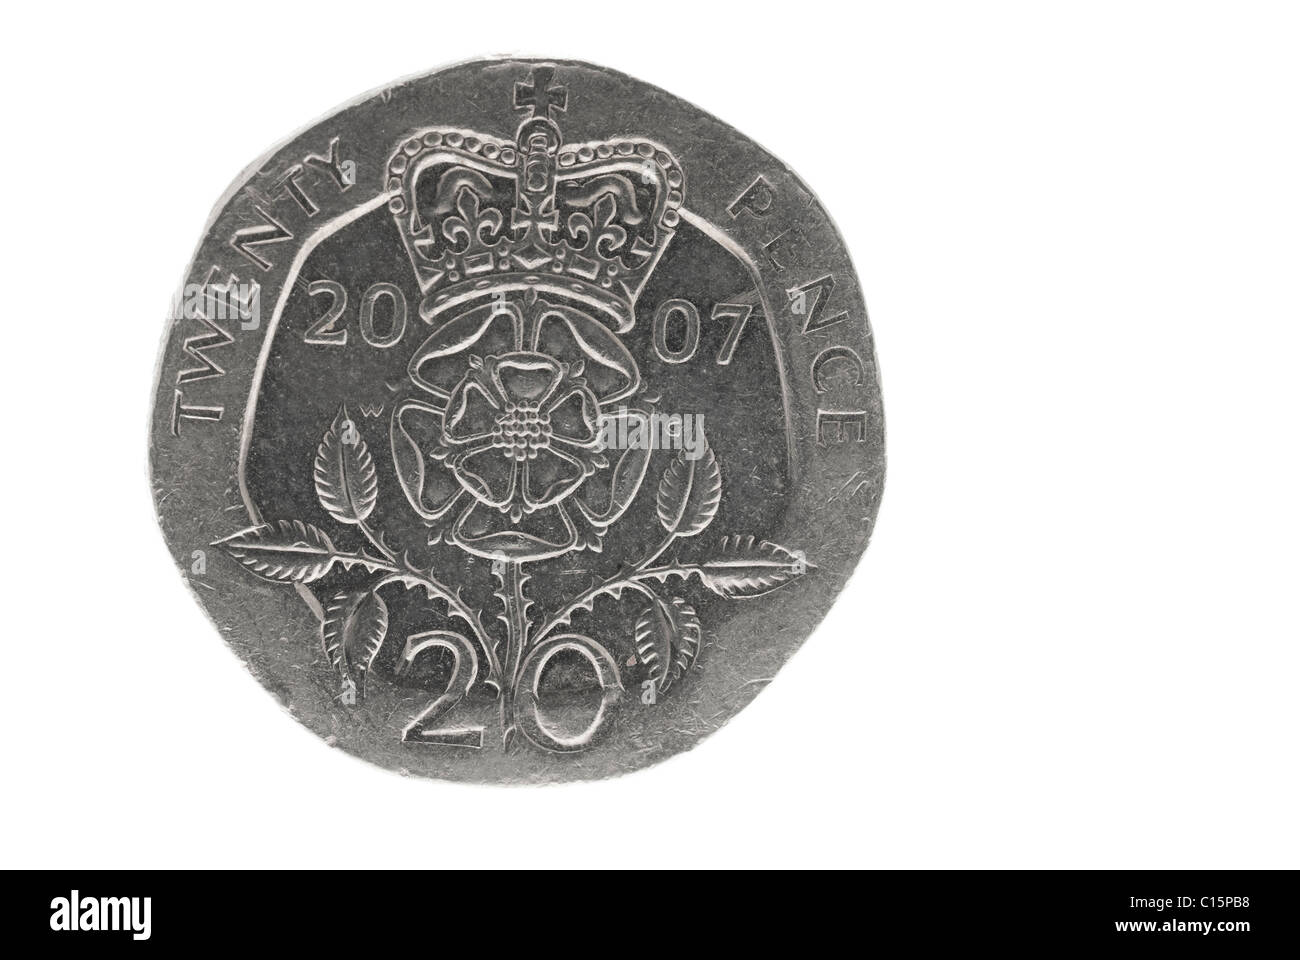 22Pence Coin Foto de stock